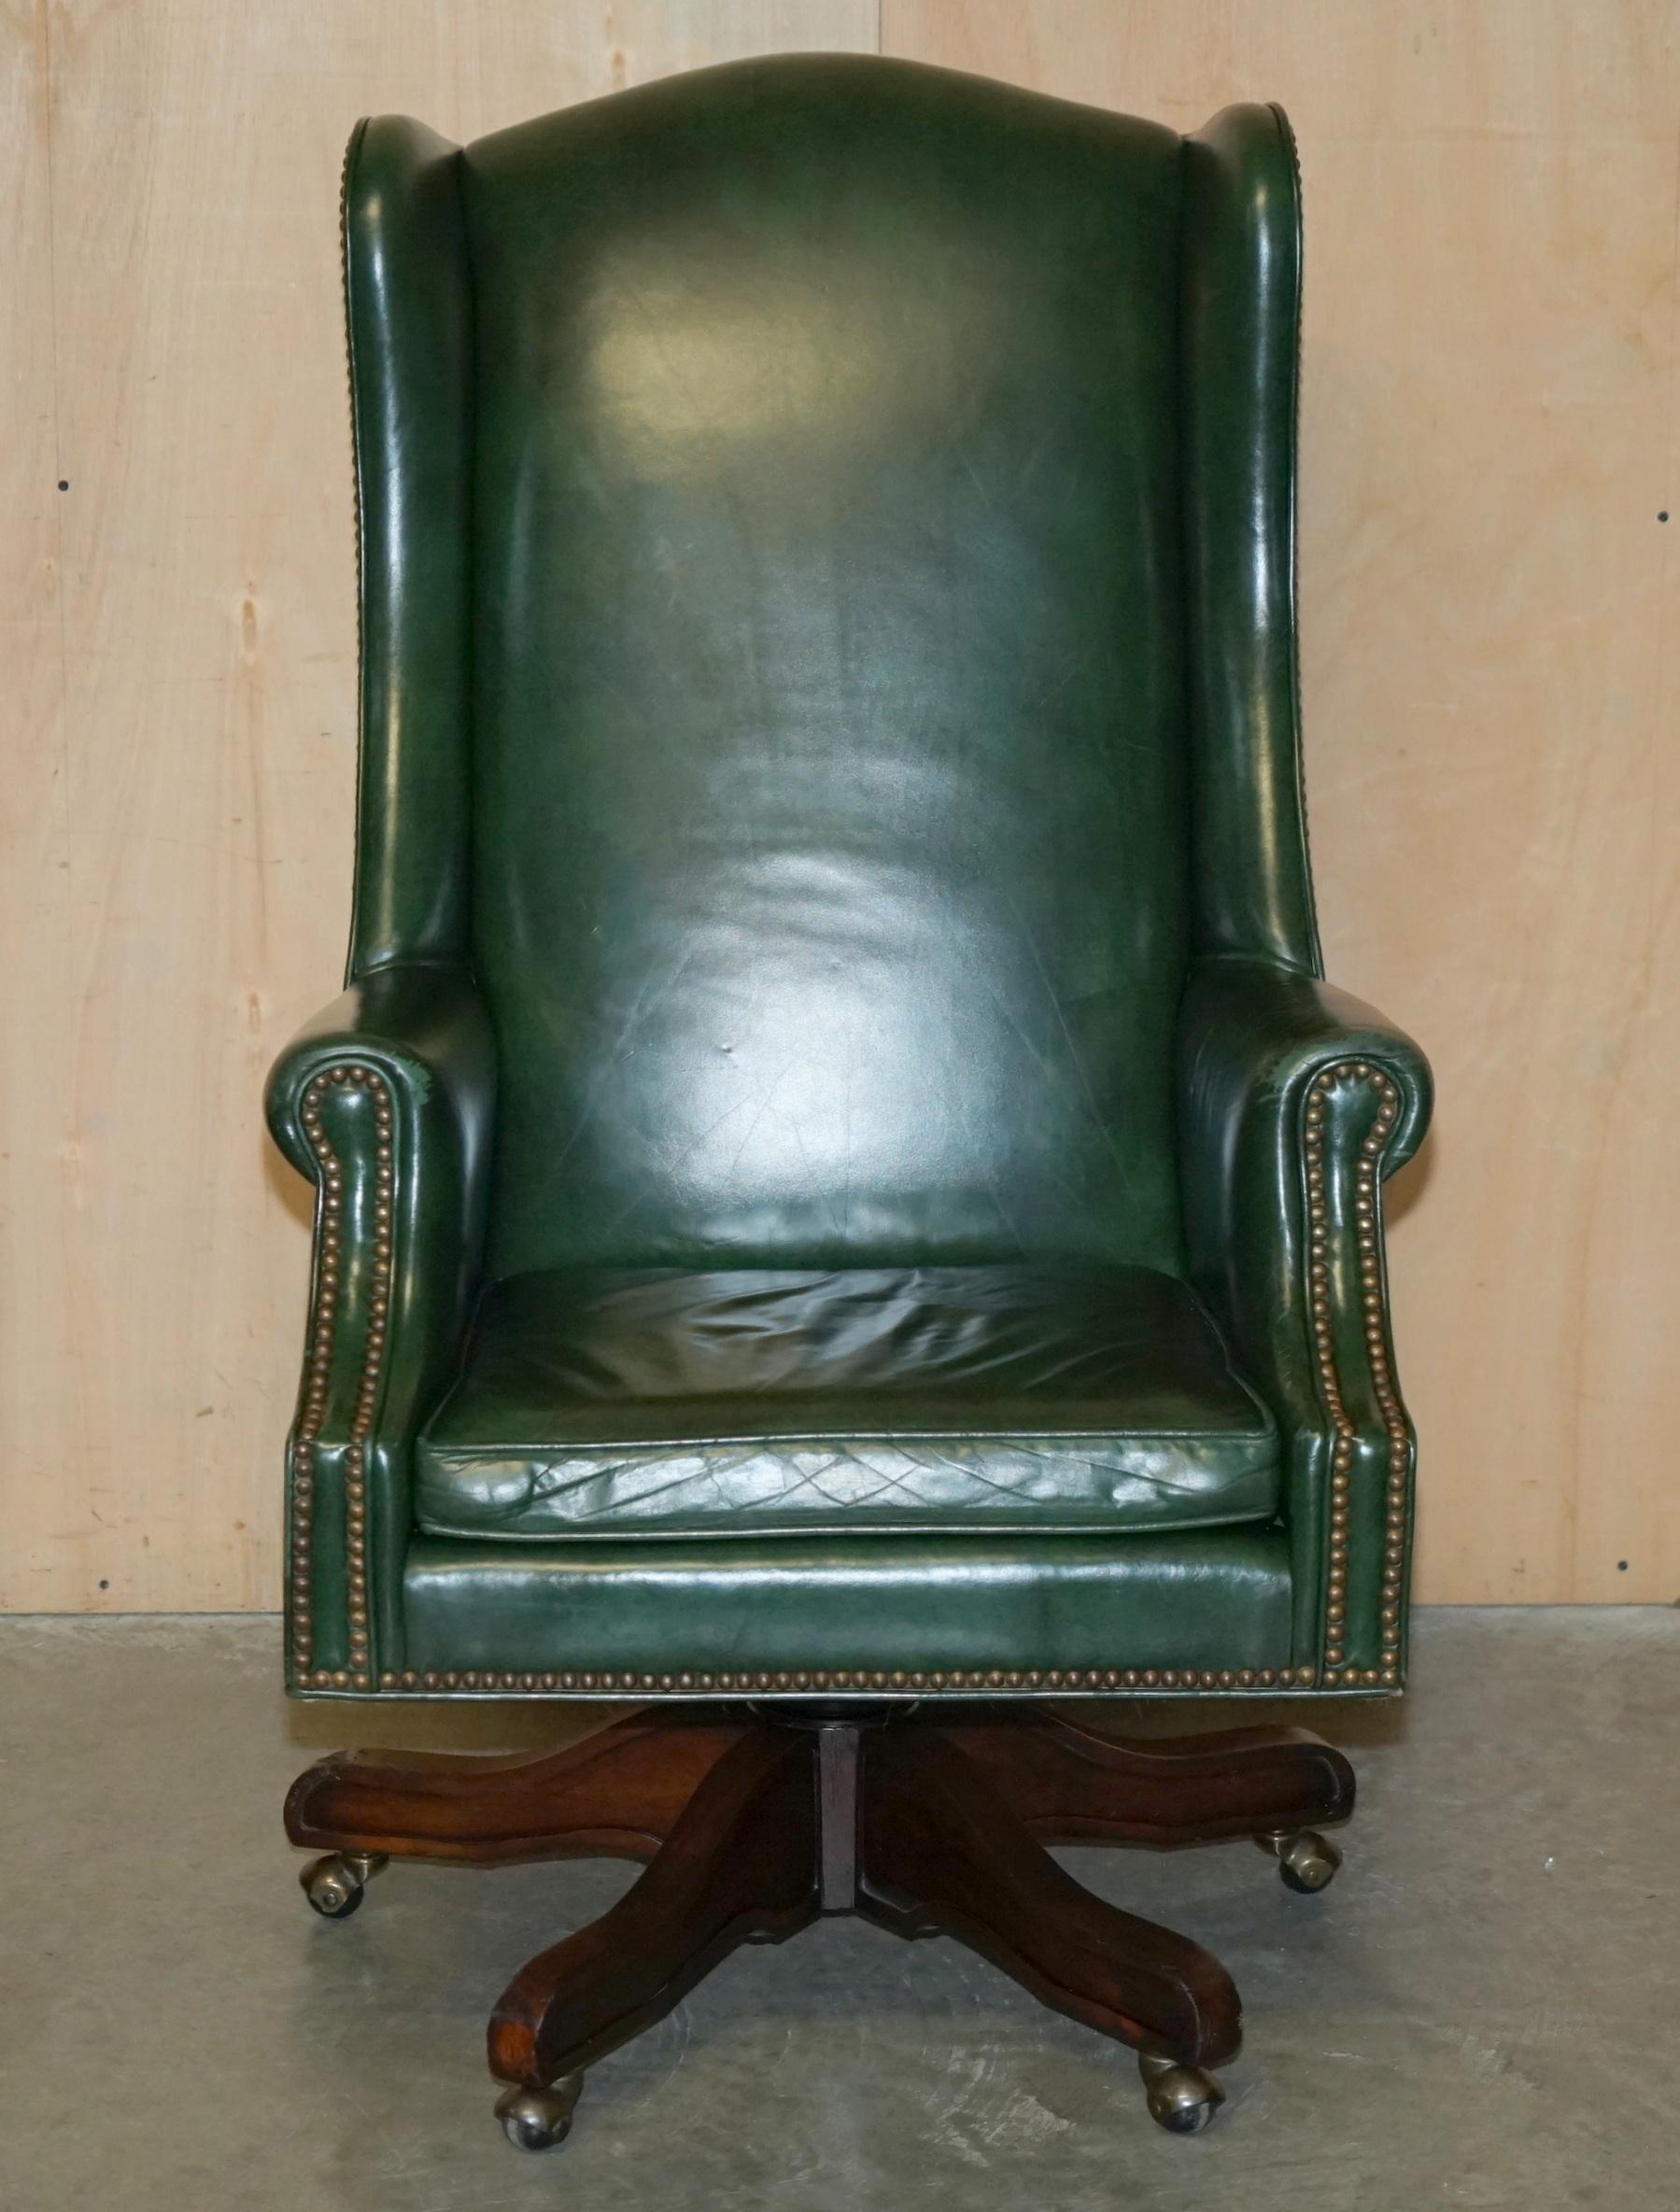 Antigüedades de la Casa Real

Royal House Antiques se complace en poner a la venta este comodísimo sillón de oficina giratorio con respaldo de cuero verde Heritage 

Por favor, tenga en cuenta que la tarifa de entrega indicada es sólo una guía,